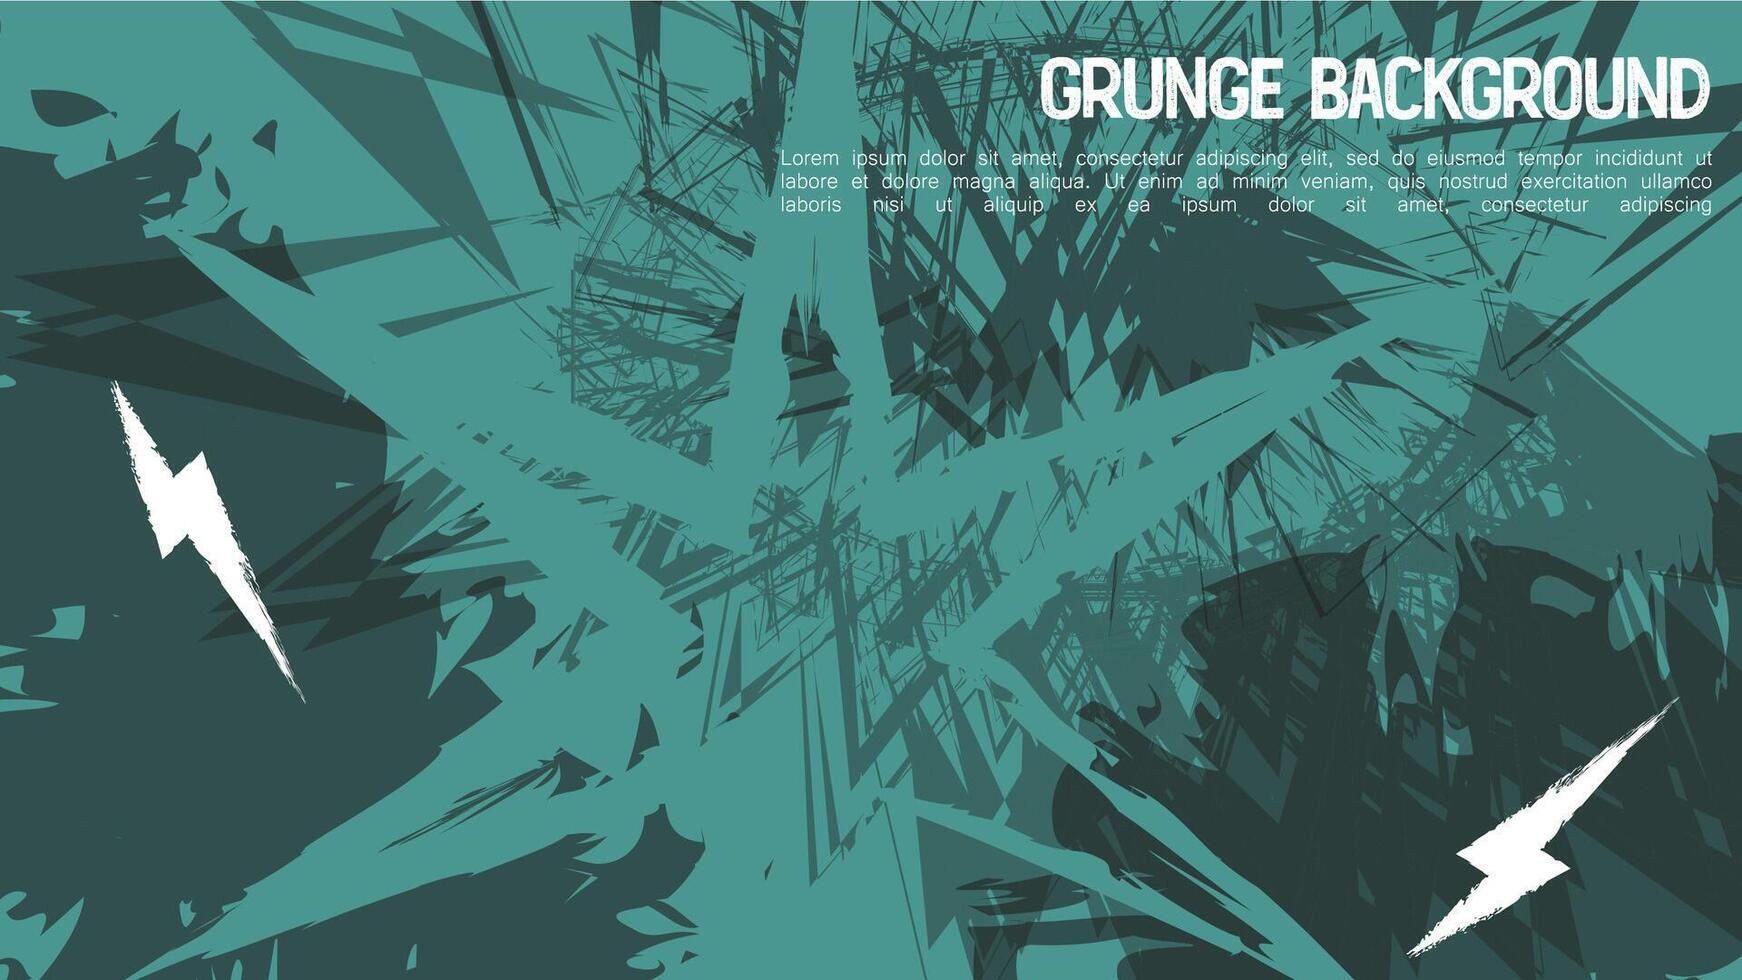 abstrakt Blau Grunge Spritzer tosca im schwarz Hintergrund Design. Vektor Illustration. Element Bürste Grunge künstlerisch.